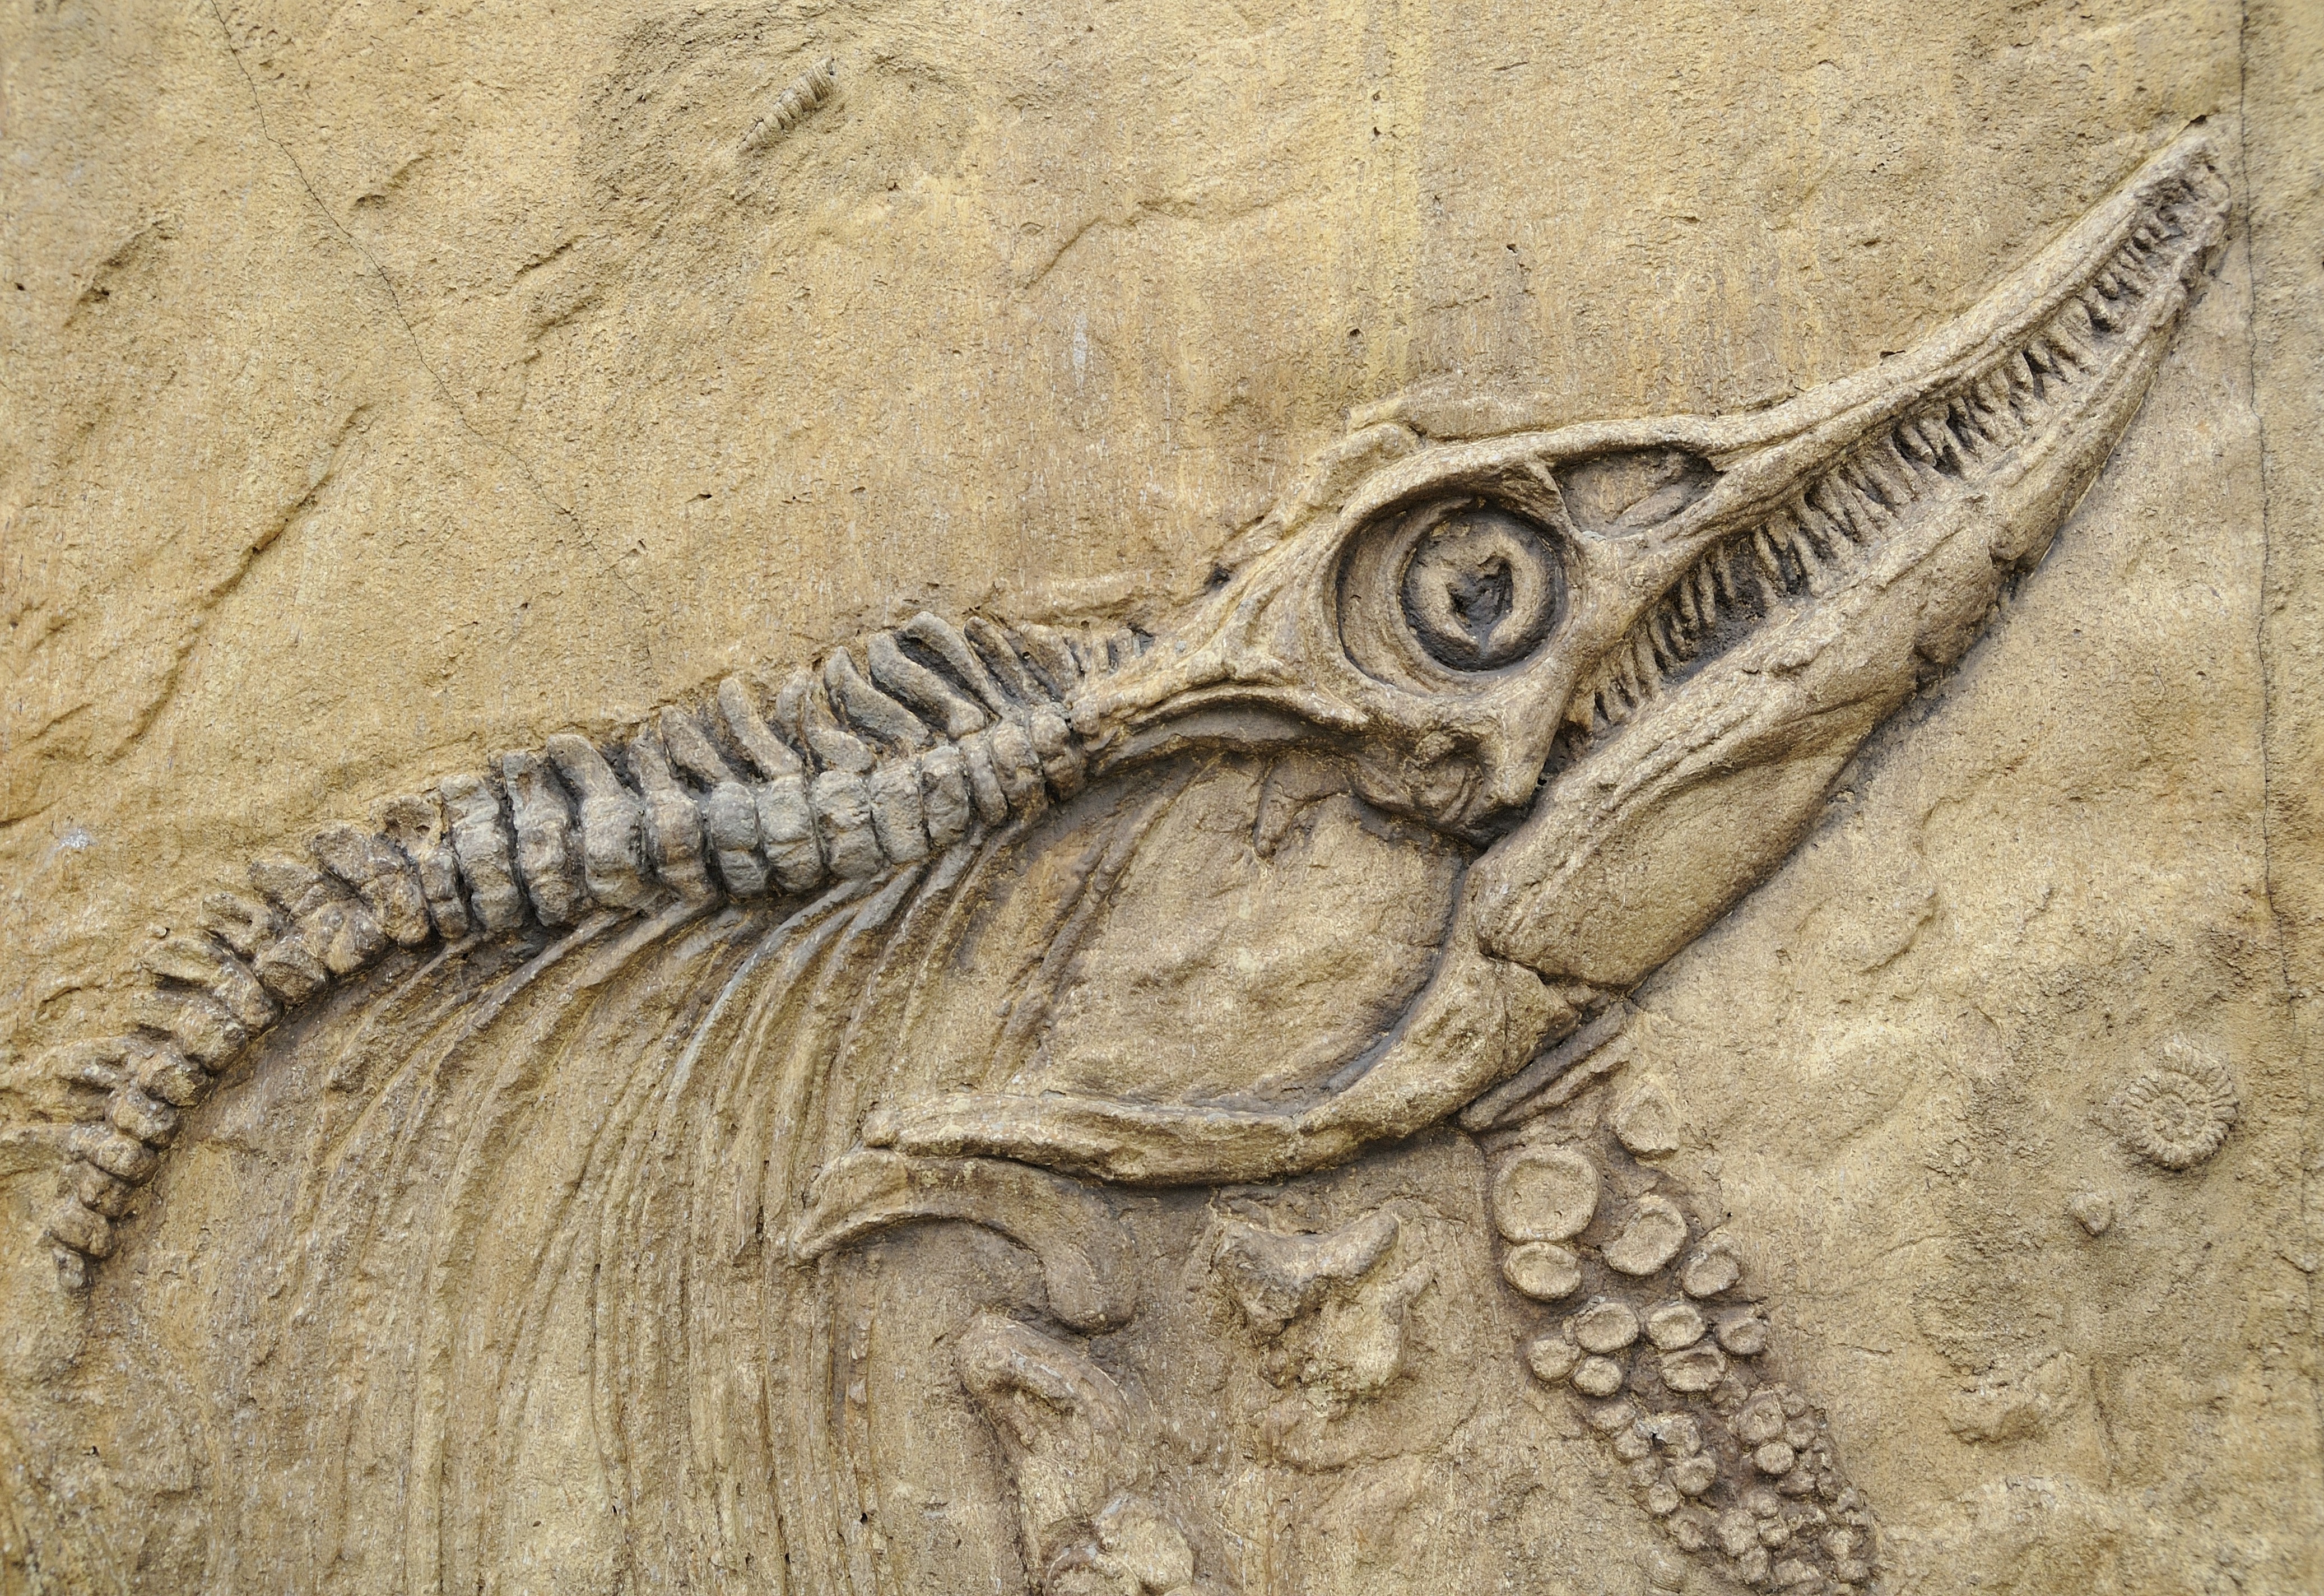 Палеонтологические находки животных. Грин Ривер крокодил окаменелость. Окаменелости Юрского периода динозавры. Окаменелые кости динозавров. Братские могилы динозавров окаменелость.